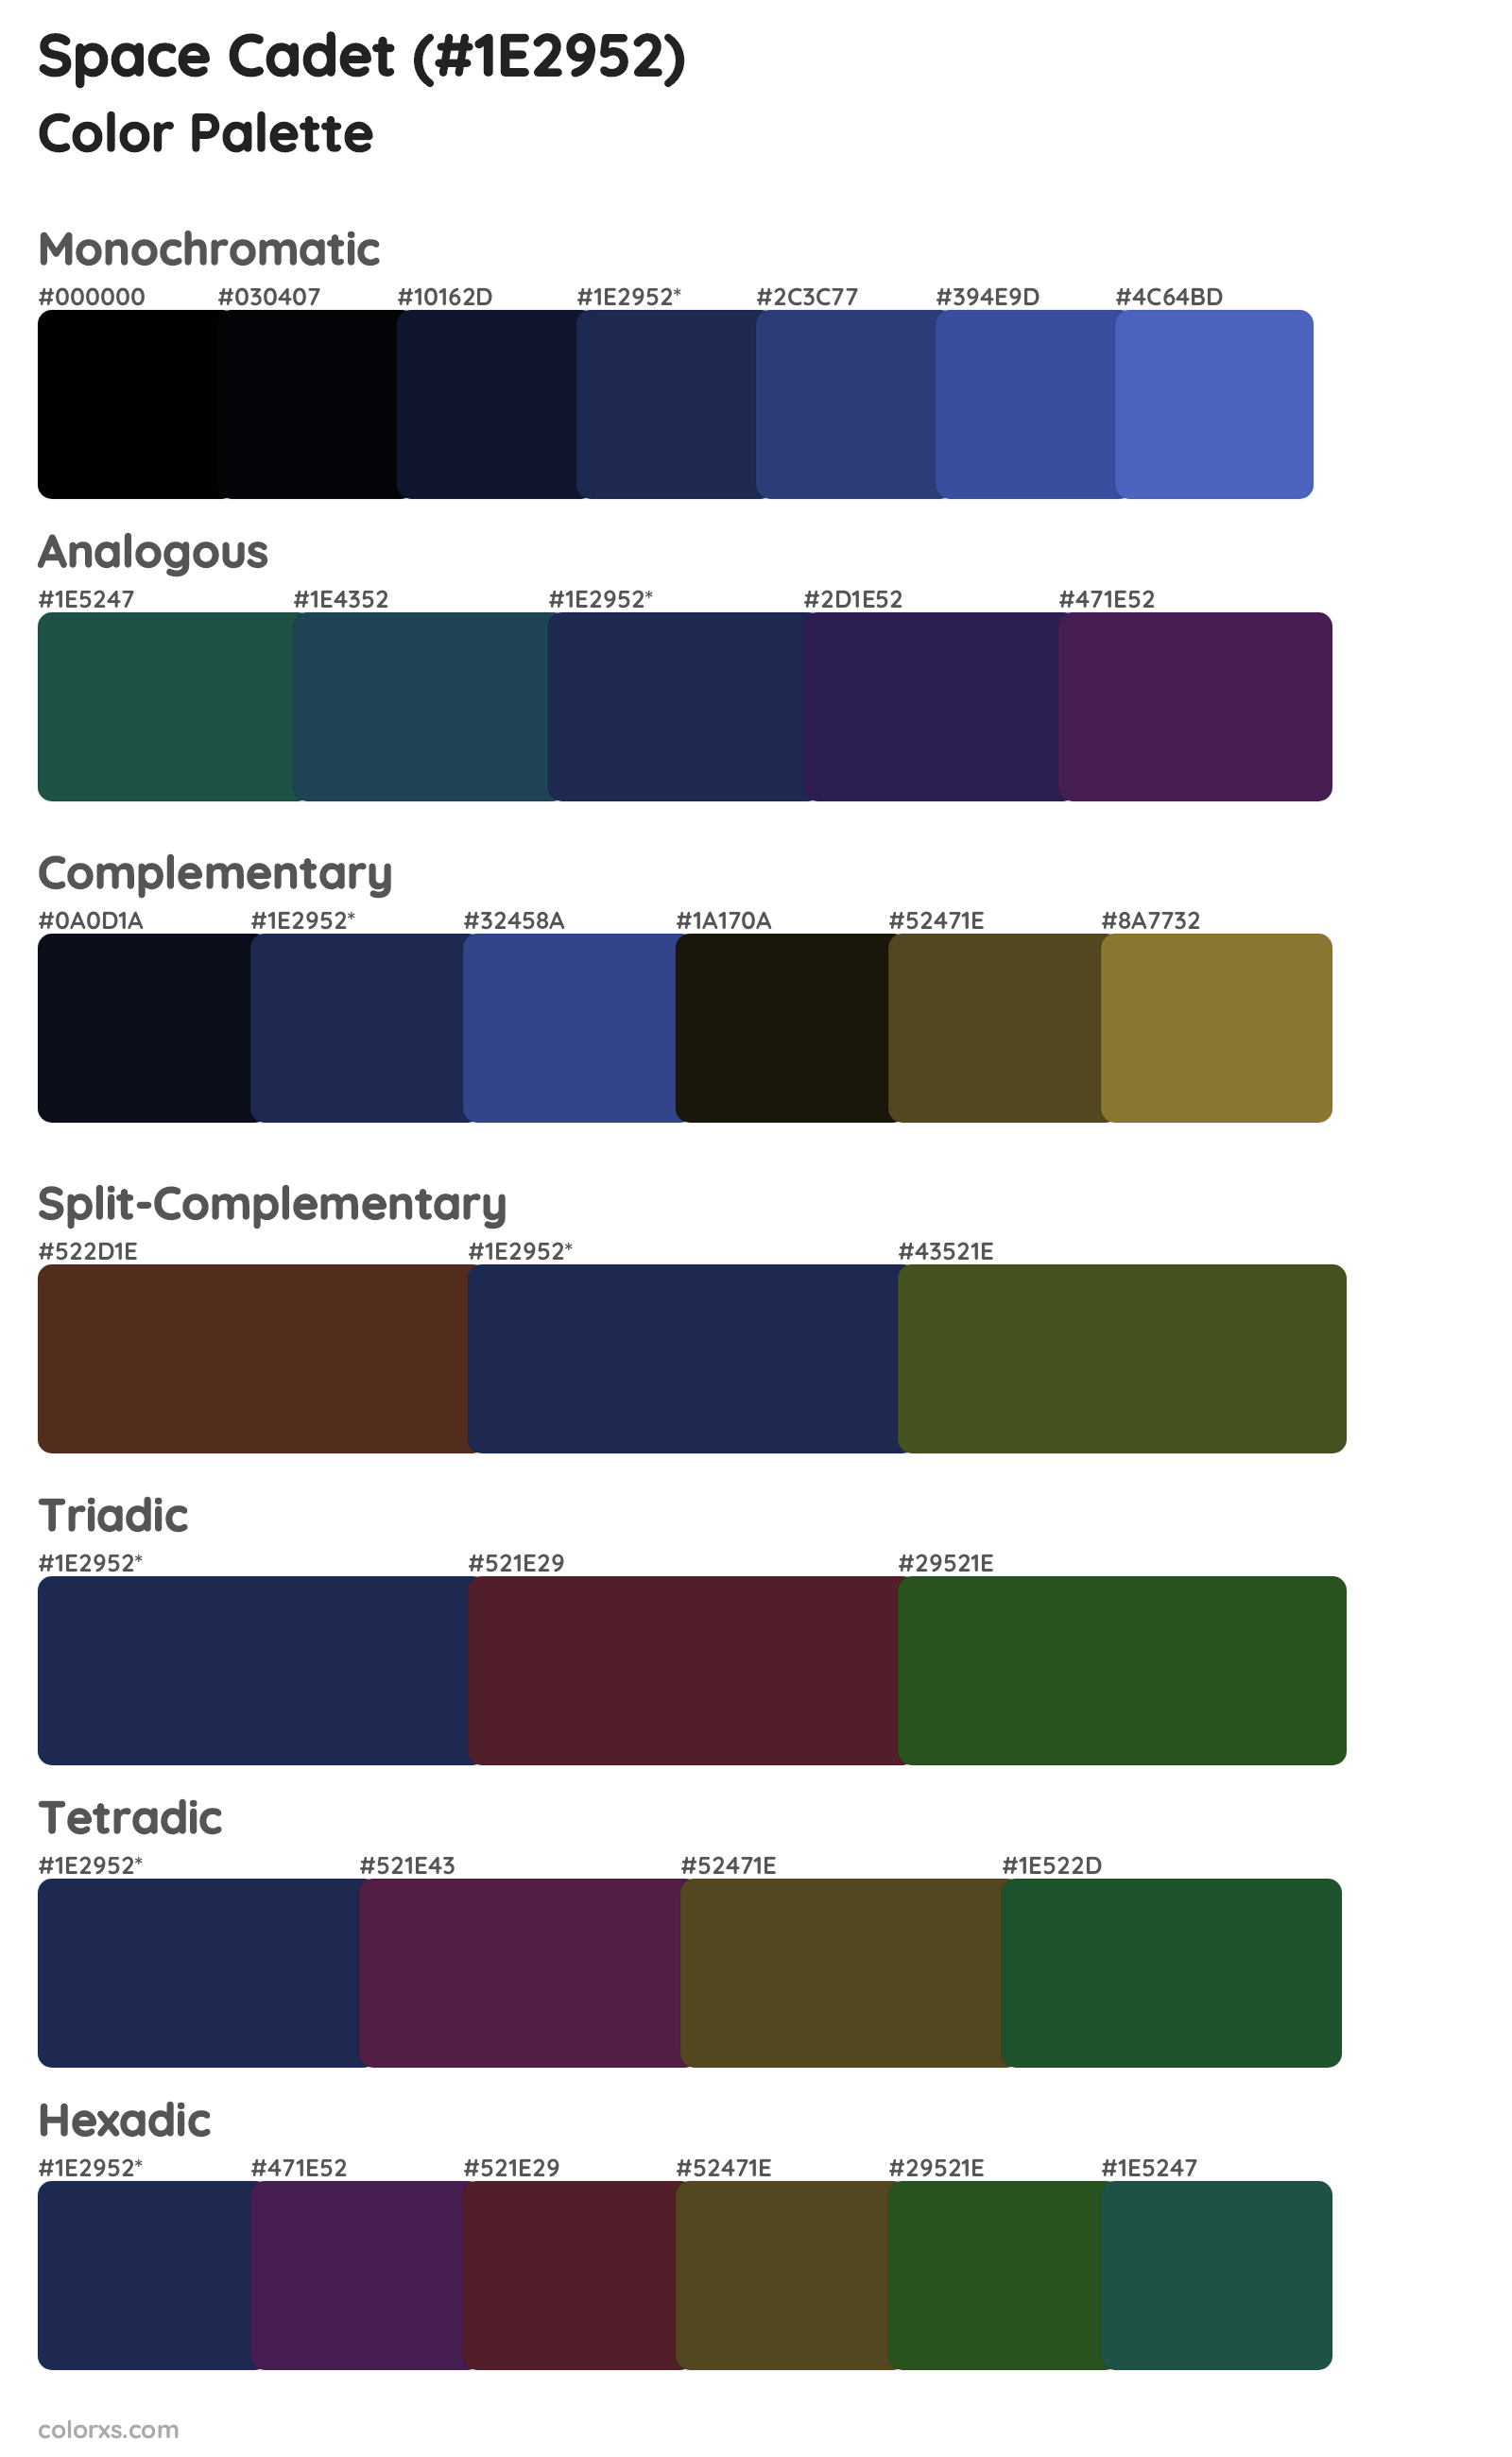 Space Cadet Color Scheme Palettes